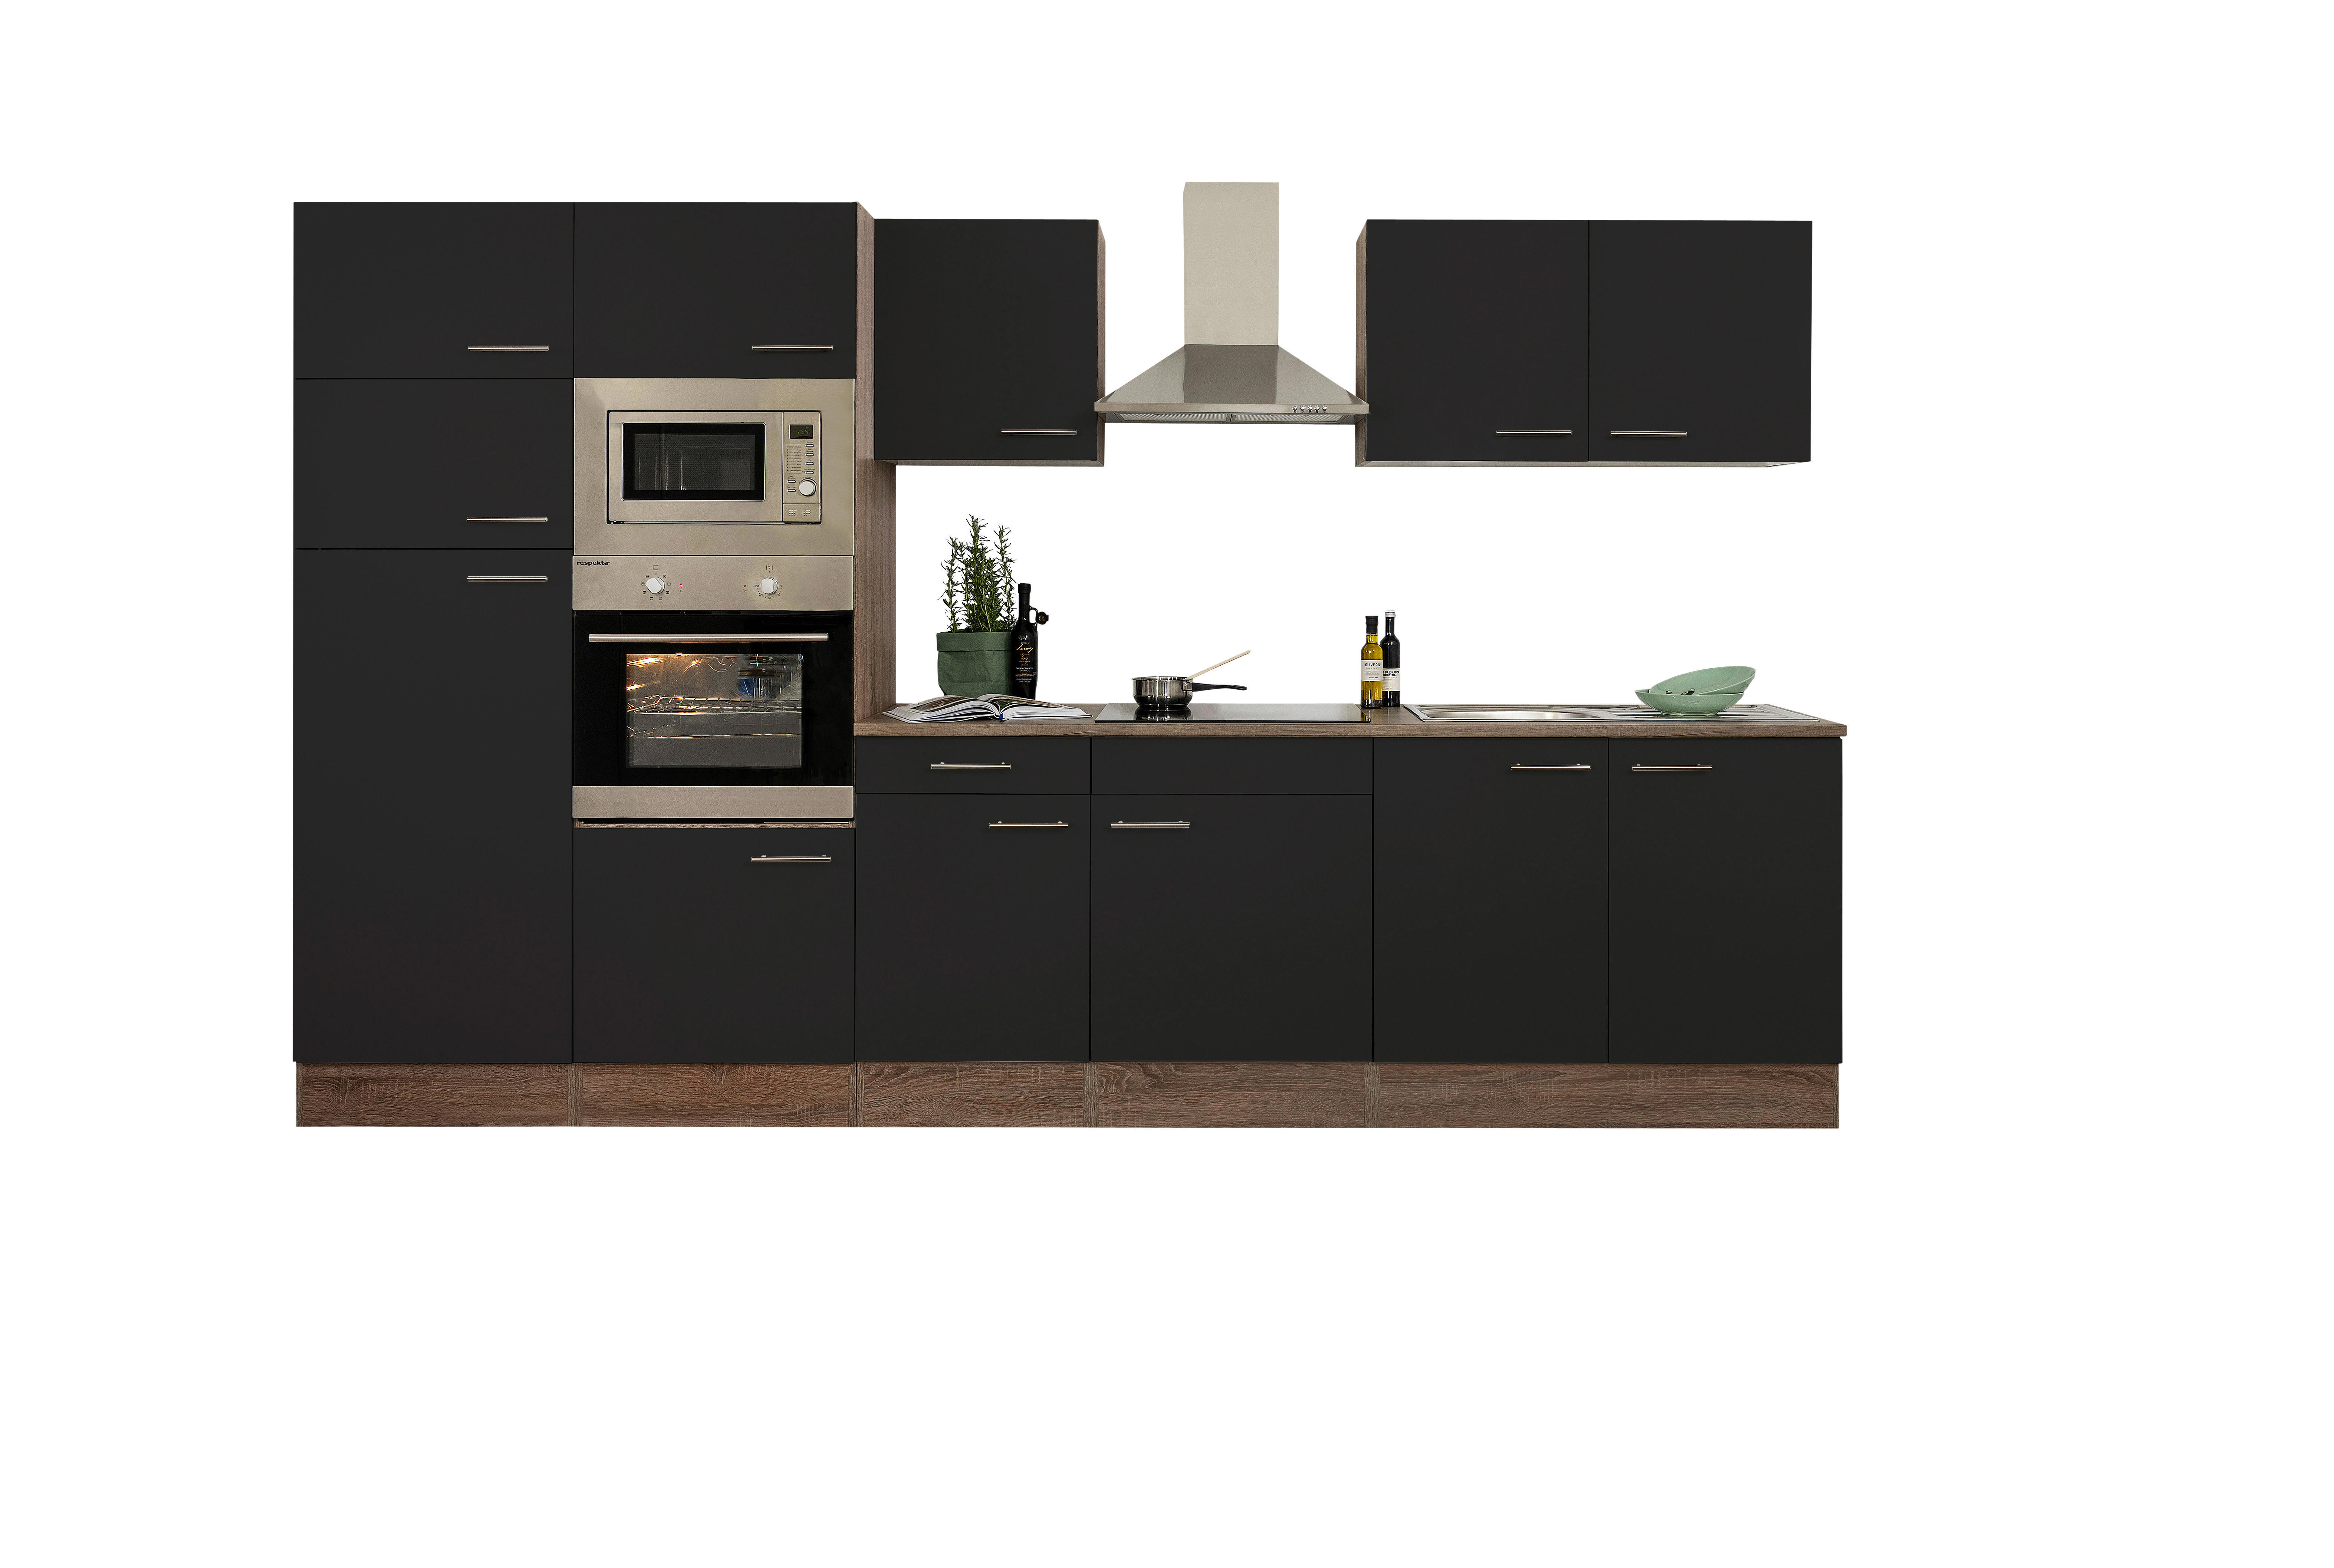 MODULKÖK  330 cm  - svart/rostfritt stålfärgad, Design, metall/träbaserade material (330cm) - Respekta